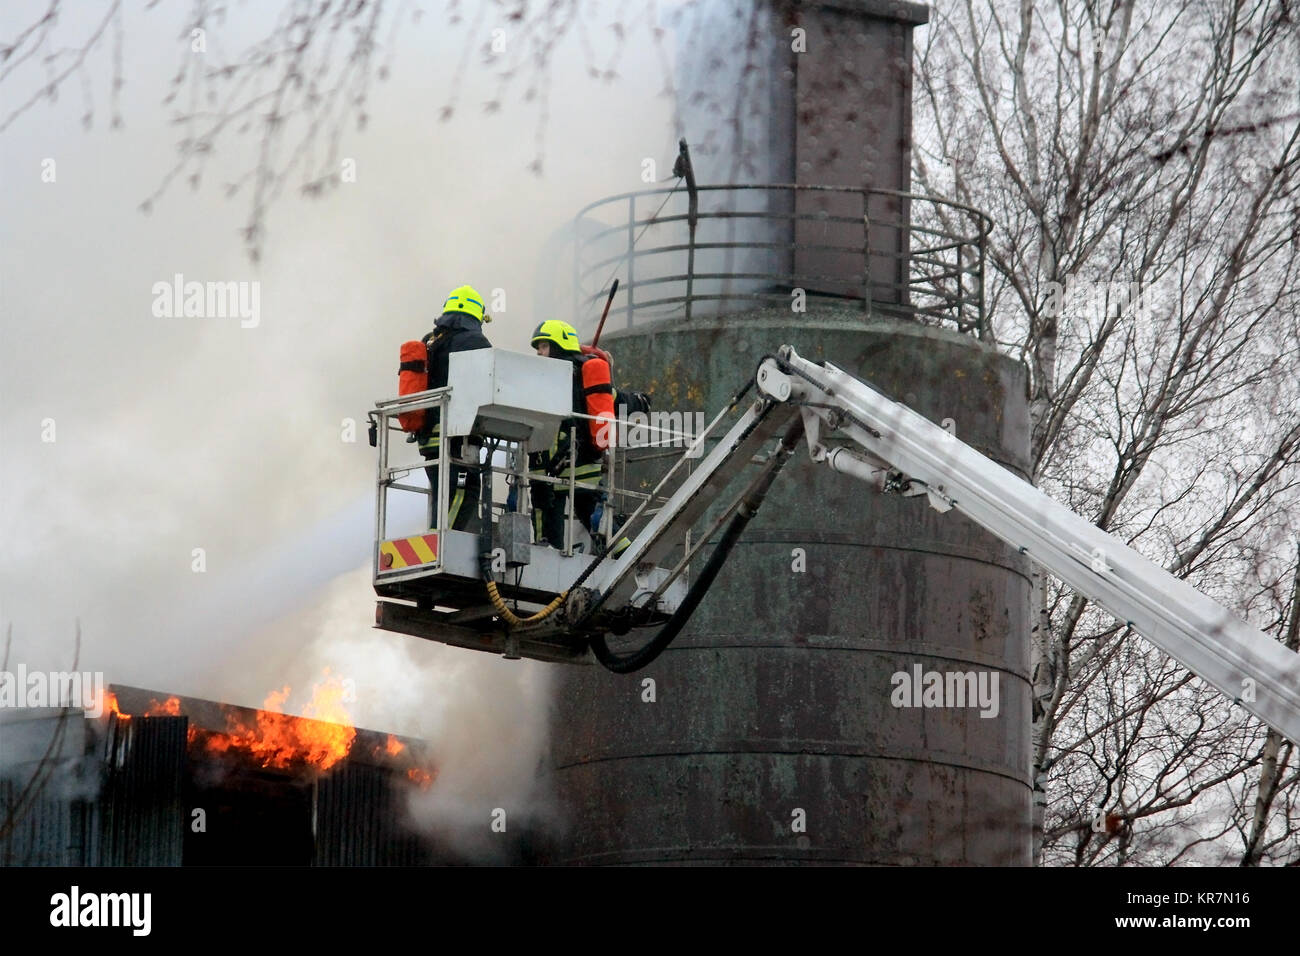 SALO, Finnland - 16. FEBRUAR 2014: die Brandbekämpfung Löschmittel Flammen auf einem hydraulischen Kran Plattform an der Salo Zementwerk, das in Brand Stockfoto